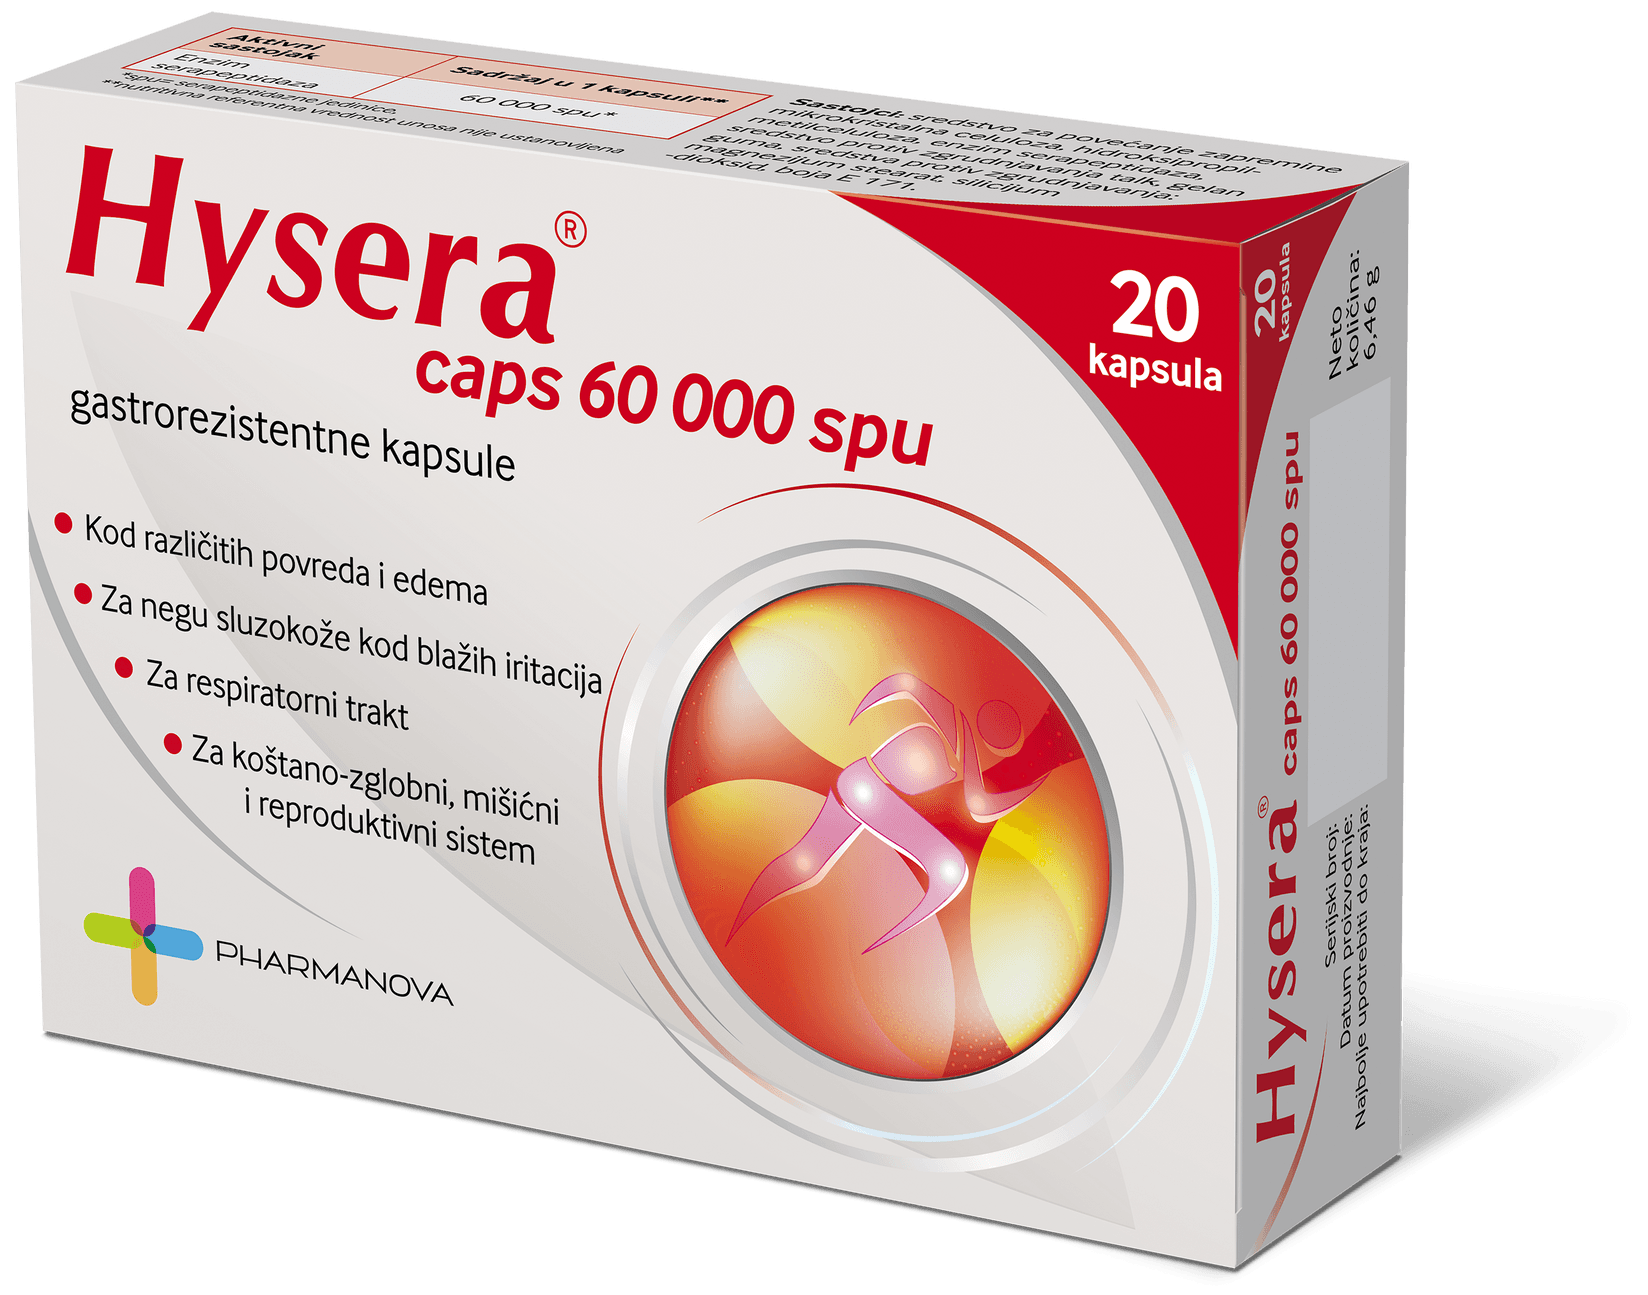 Pharmanova Hysera kapsula 20x60.000 SPU